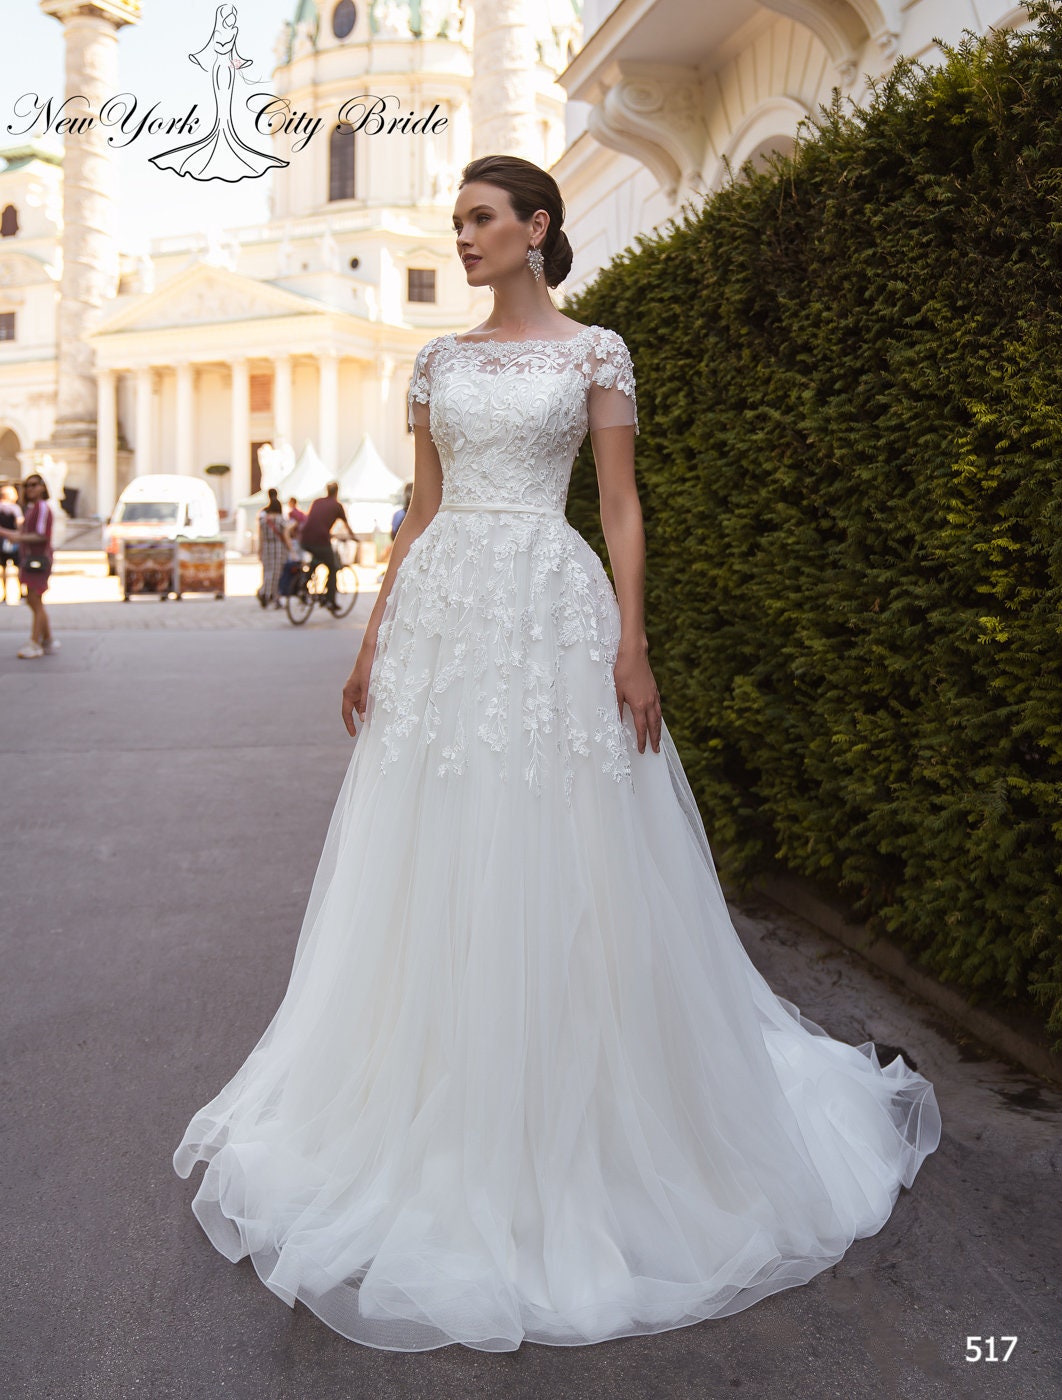 Short Sleeves Ivory Lace Bridal Wedding Dress Custom Size 0 2 4 6 8 10 12 